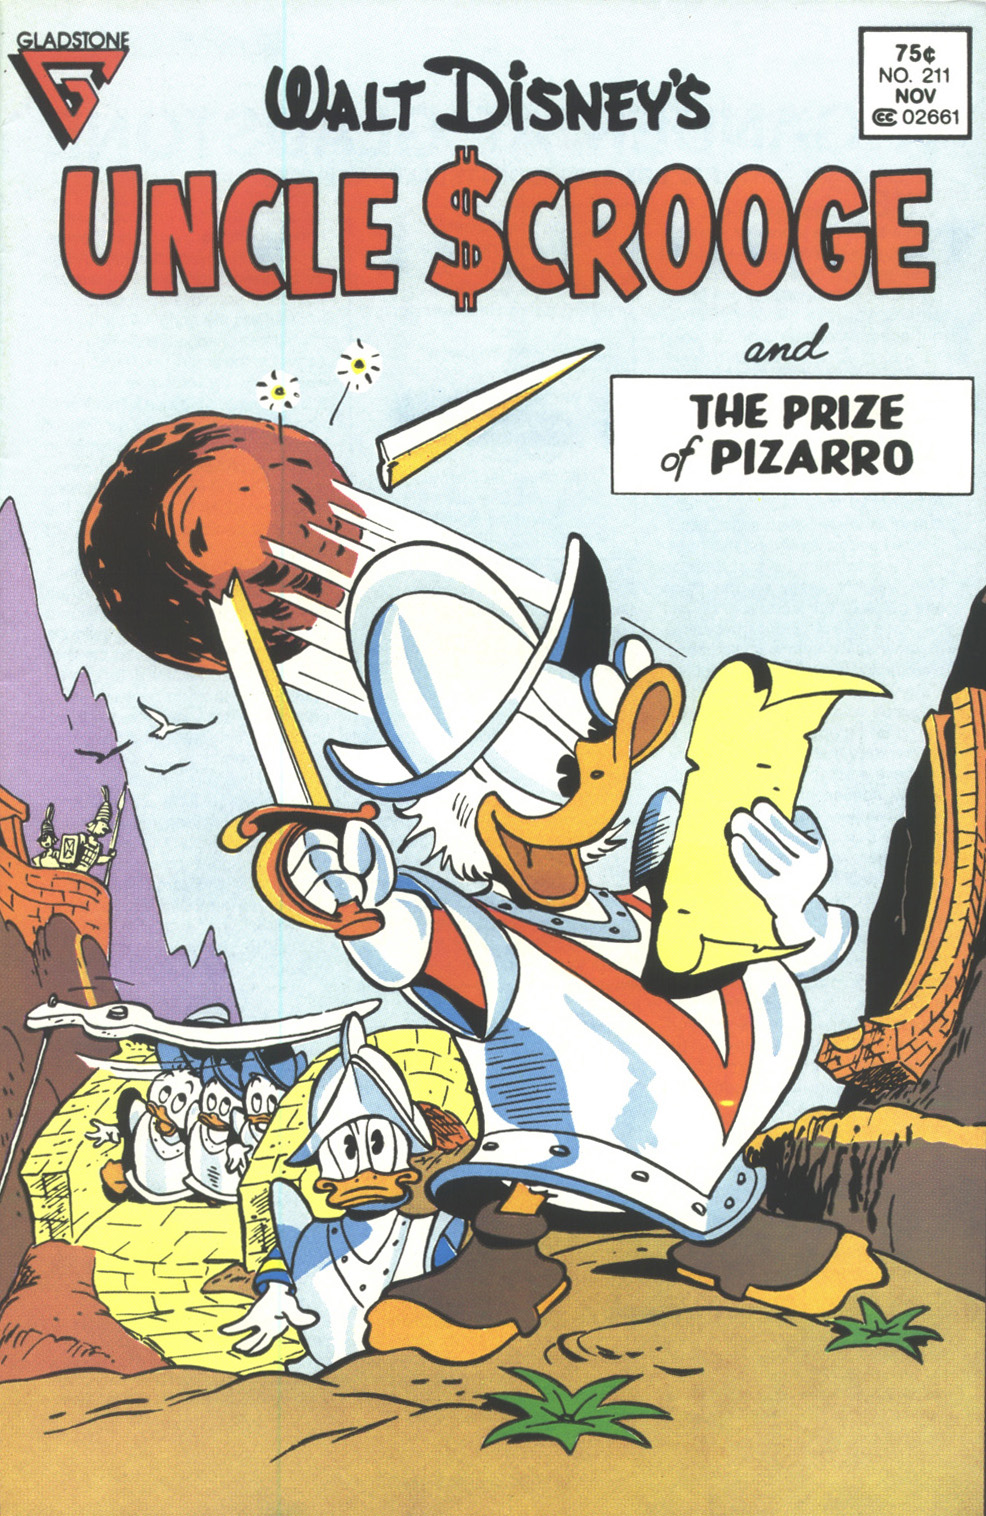 Nostalgie barksiane nel rilancio di Uncle Scrooge da parte della Gladstone Publishing